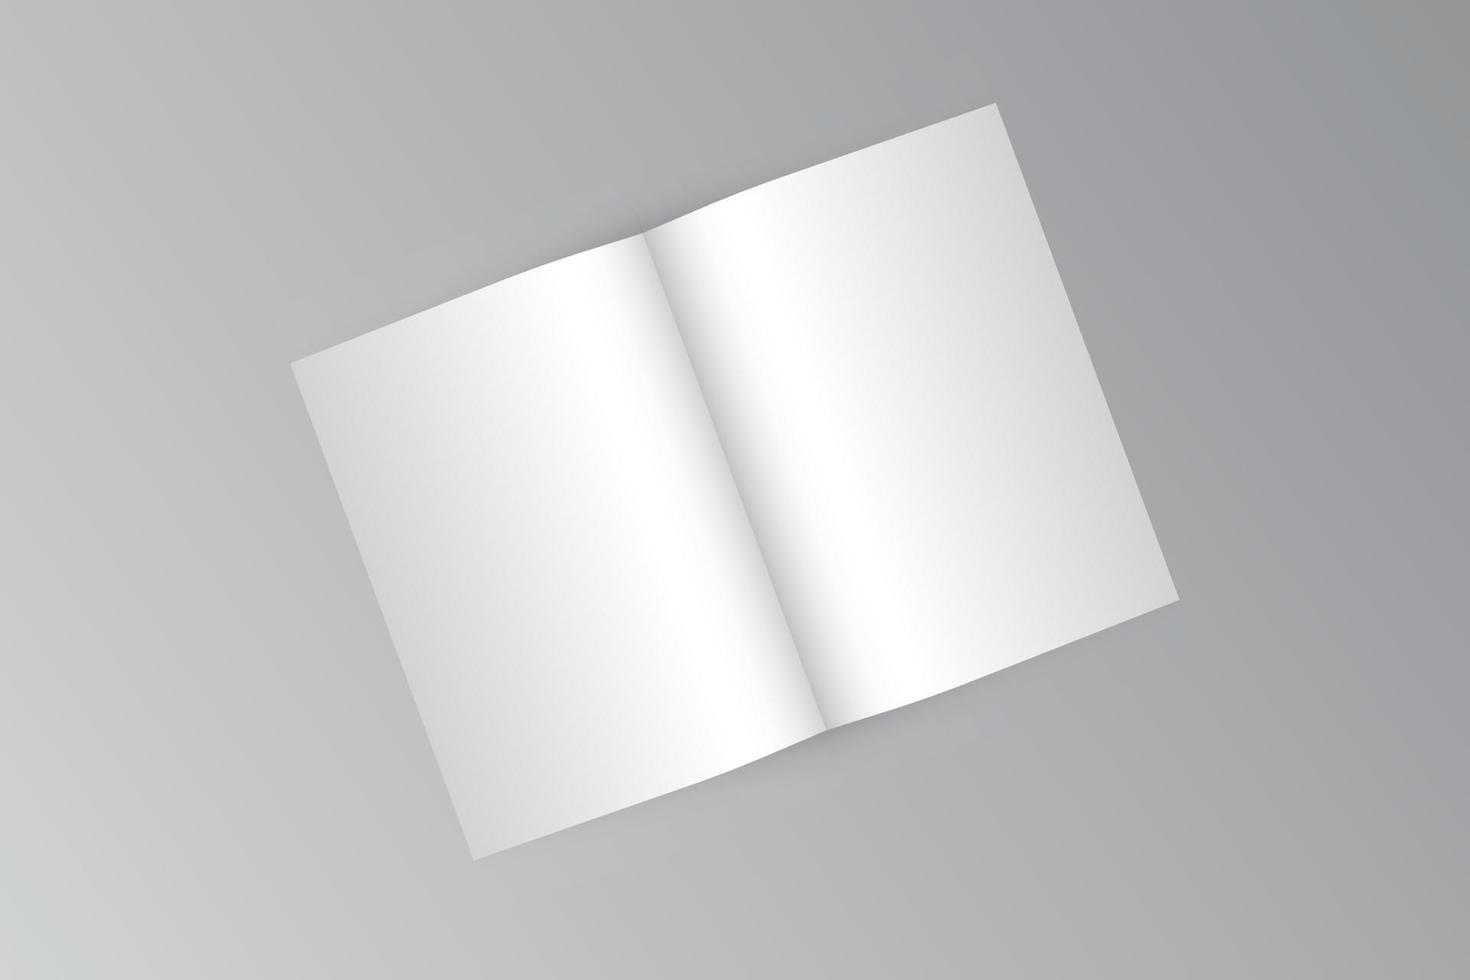 volante a3, maqueta de folleto, diseño de plantilla en blanco de medio pliegue a3, volante de un pliegue con espacio de copia, ilustración vectorial 3d. vector